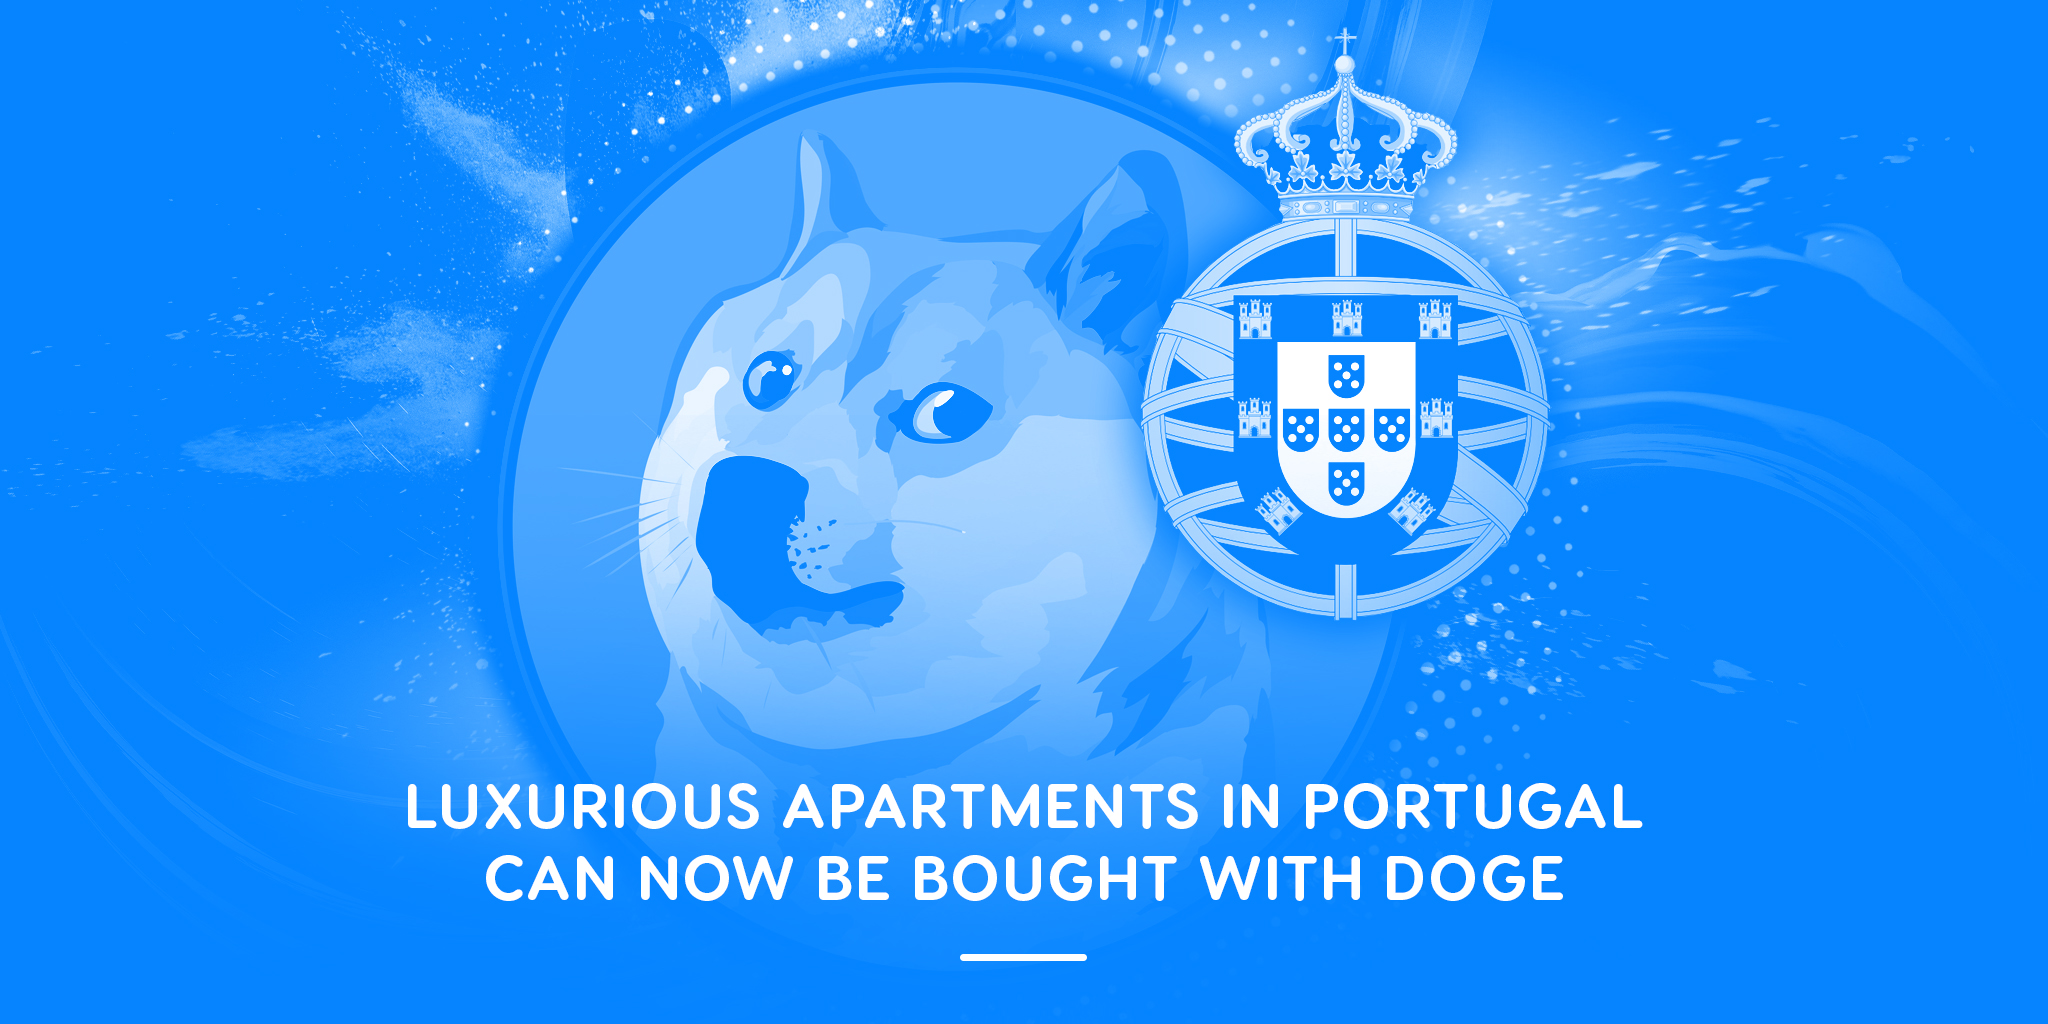 Luxuswohnungen in Portugal können jetzt mit DOGE gekauft werden